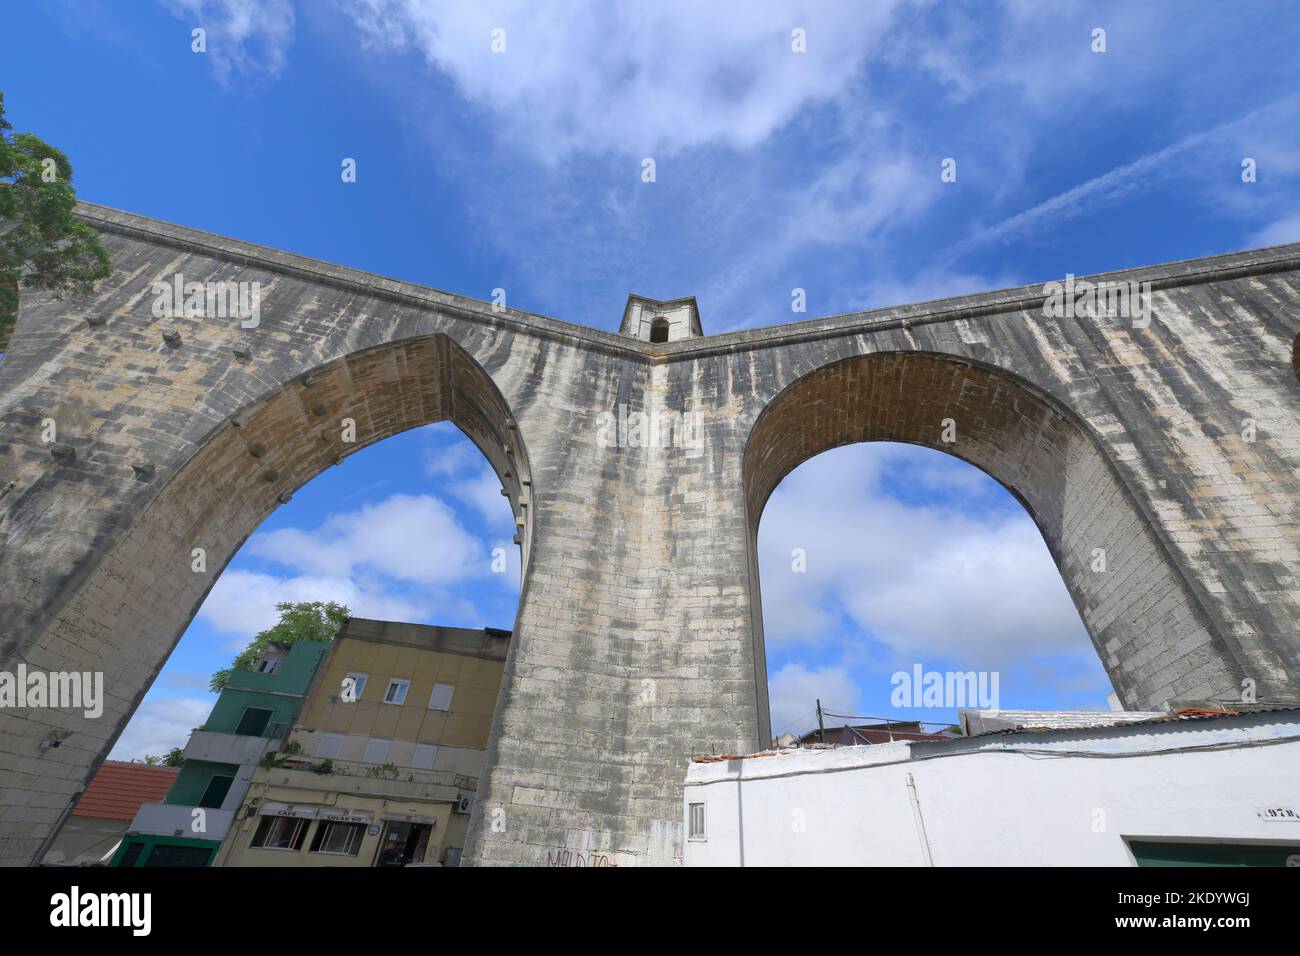 Aqueduc historique de 18th siècles des eaux libres ou aqueduc d'Aguas Livres traversant un quartier populaire, Lisbonne, Portugal Banque D'Images